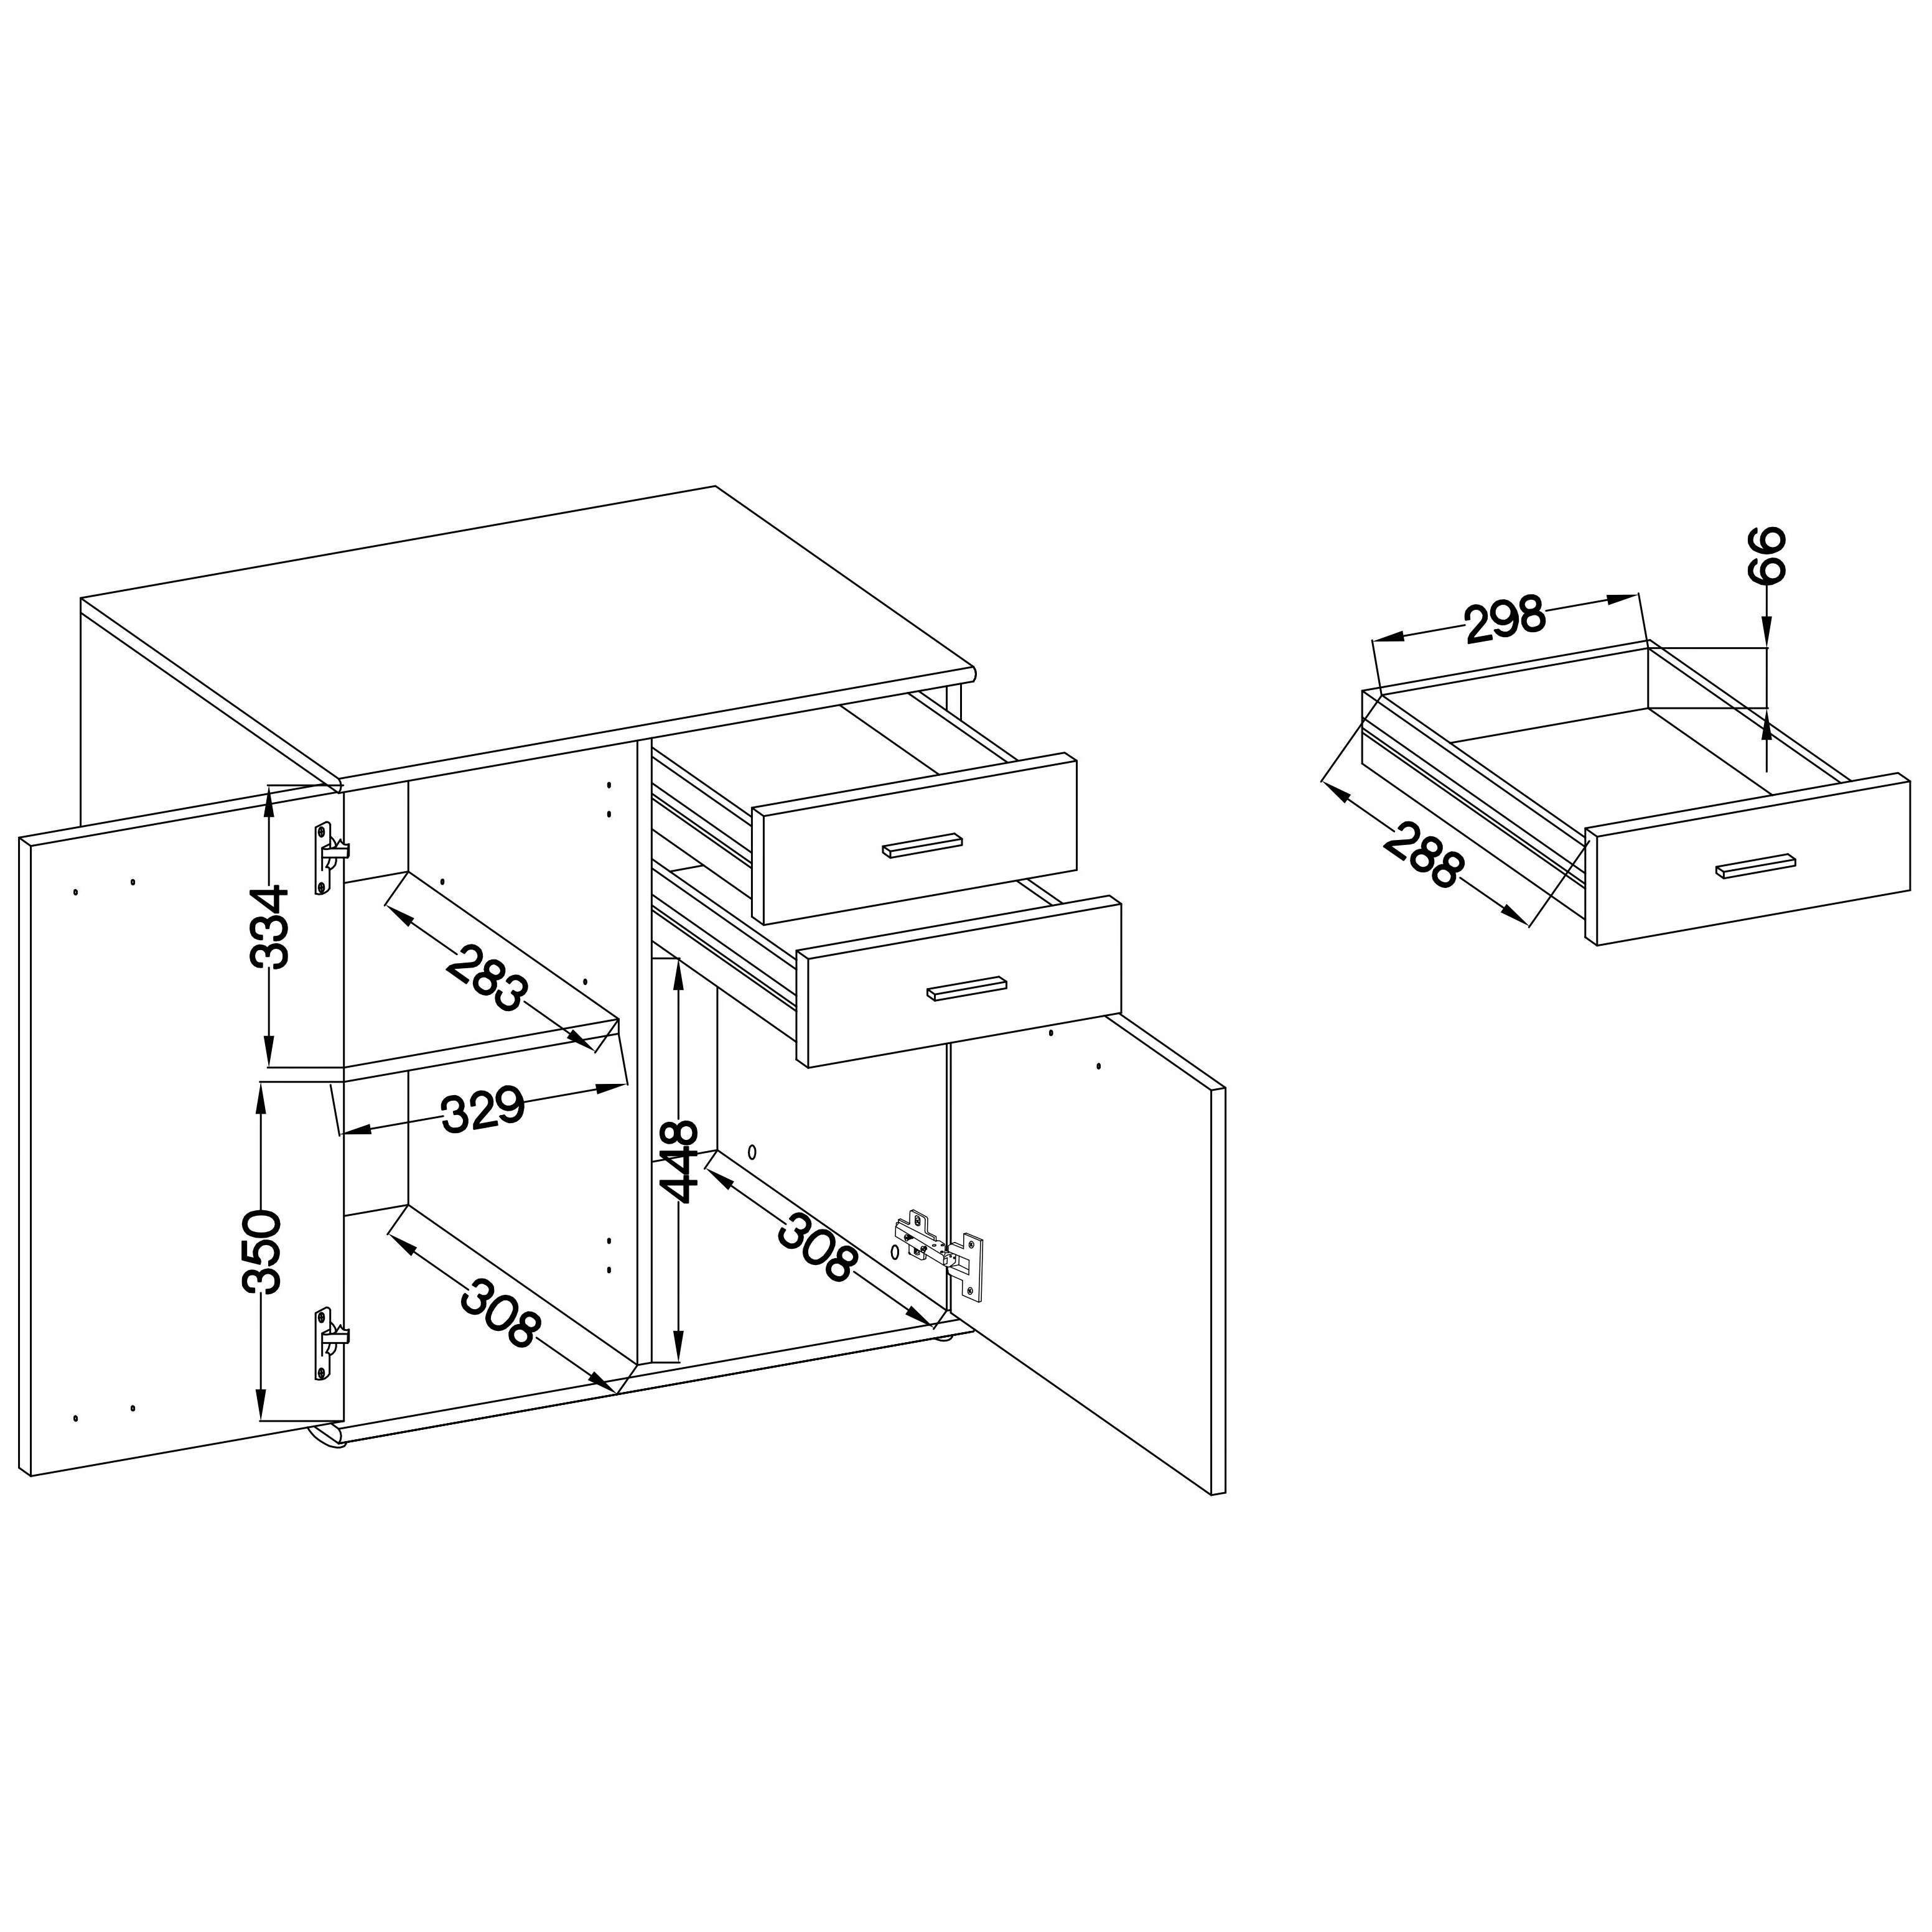 x B71 Schubladen, 2 2 2, cm klassischer und Sonoma Schrank Kommode Furnix Türen H75 multifunktionaler x mit T35 MIDOS